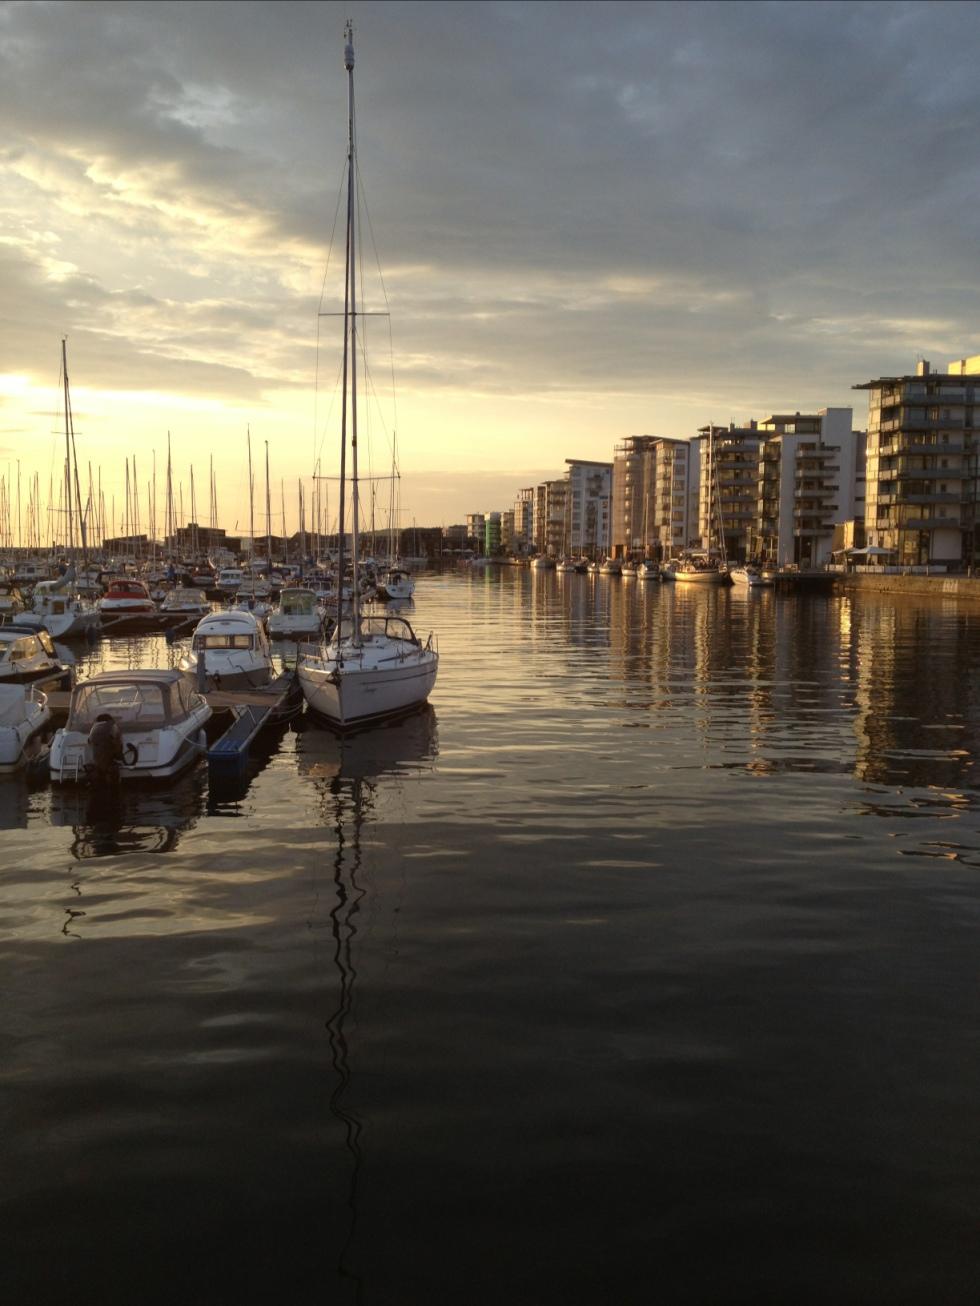 Ljuvlig kvällspromenad i Norra hamnen, Helsingborg!